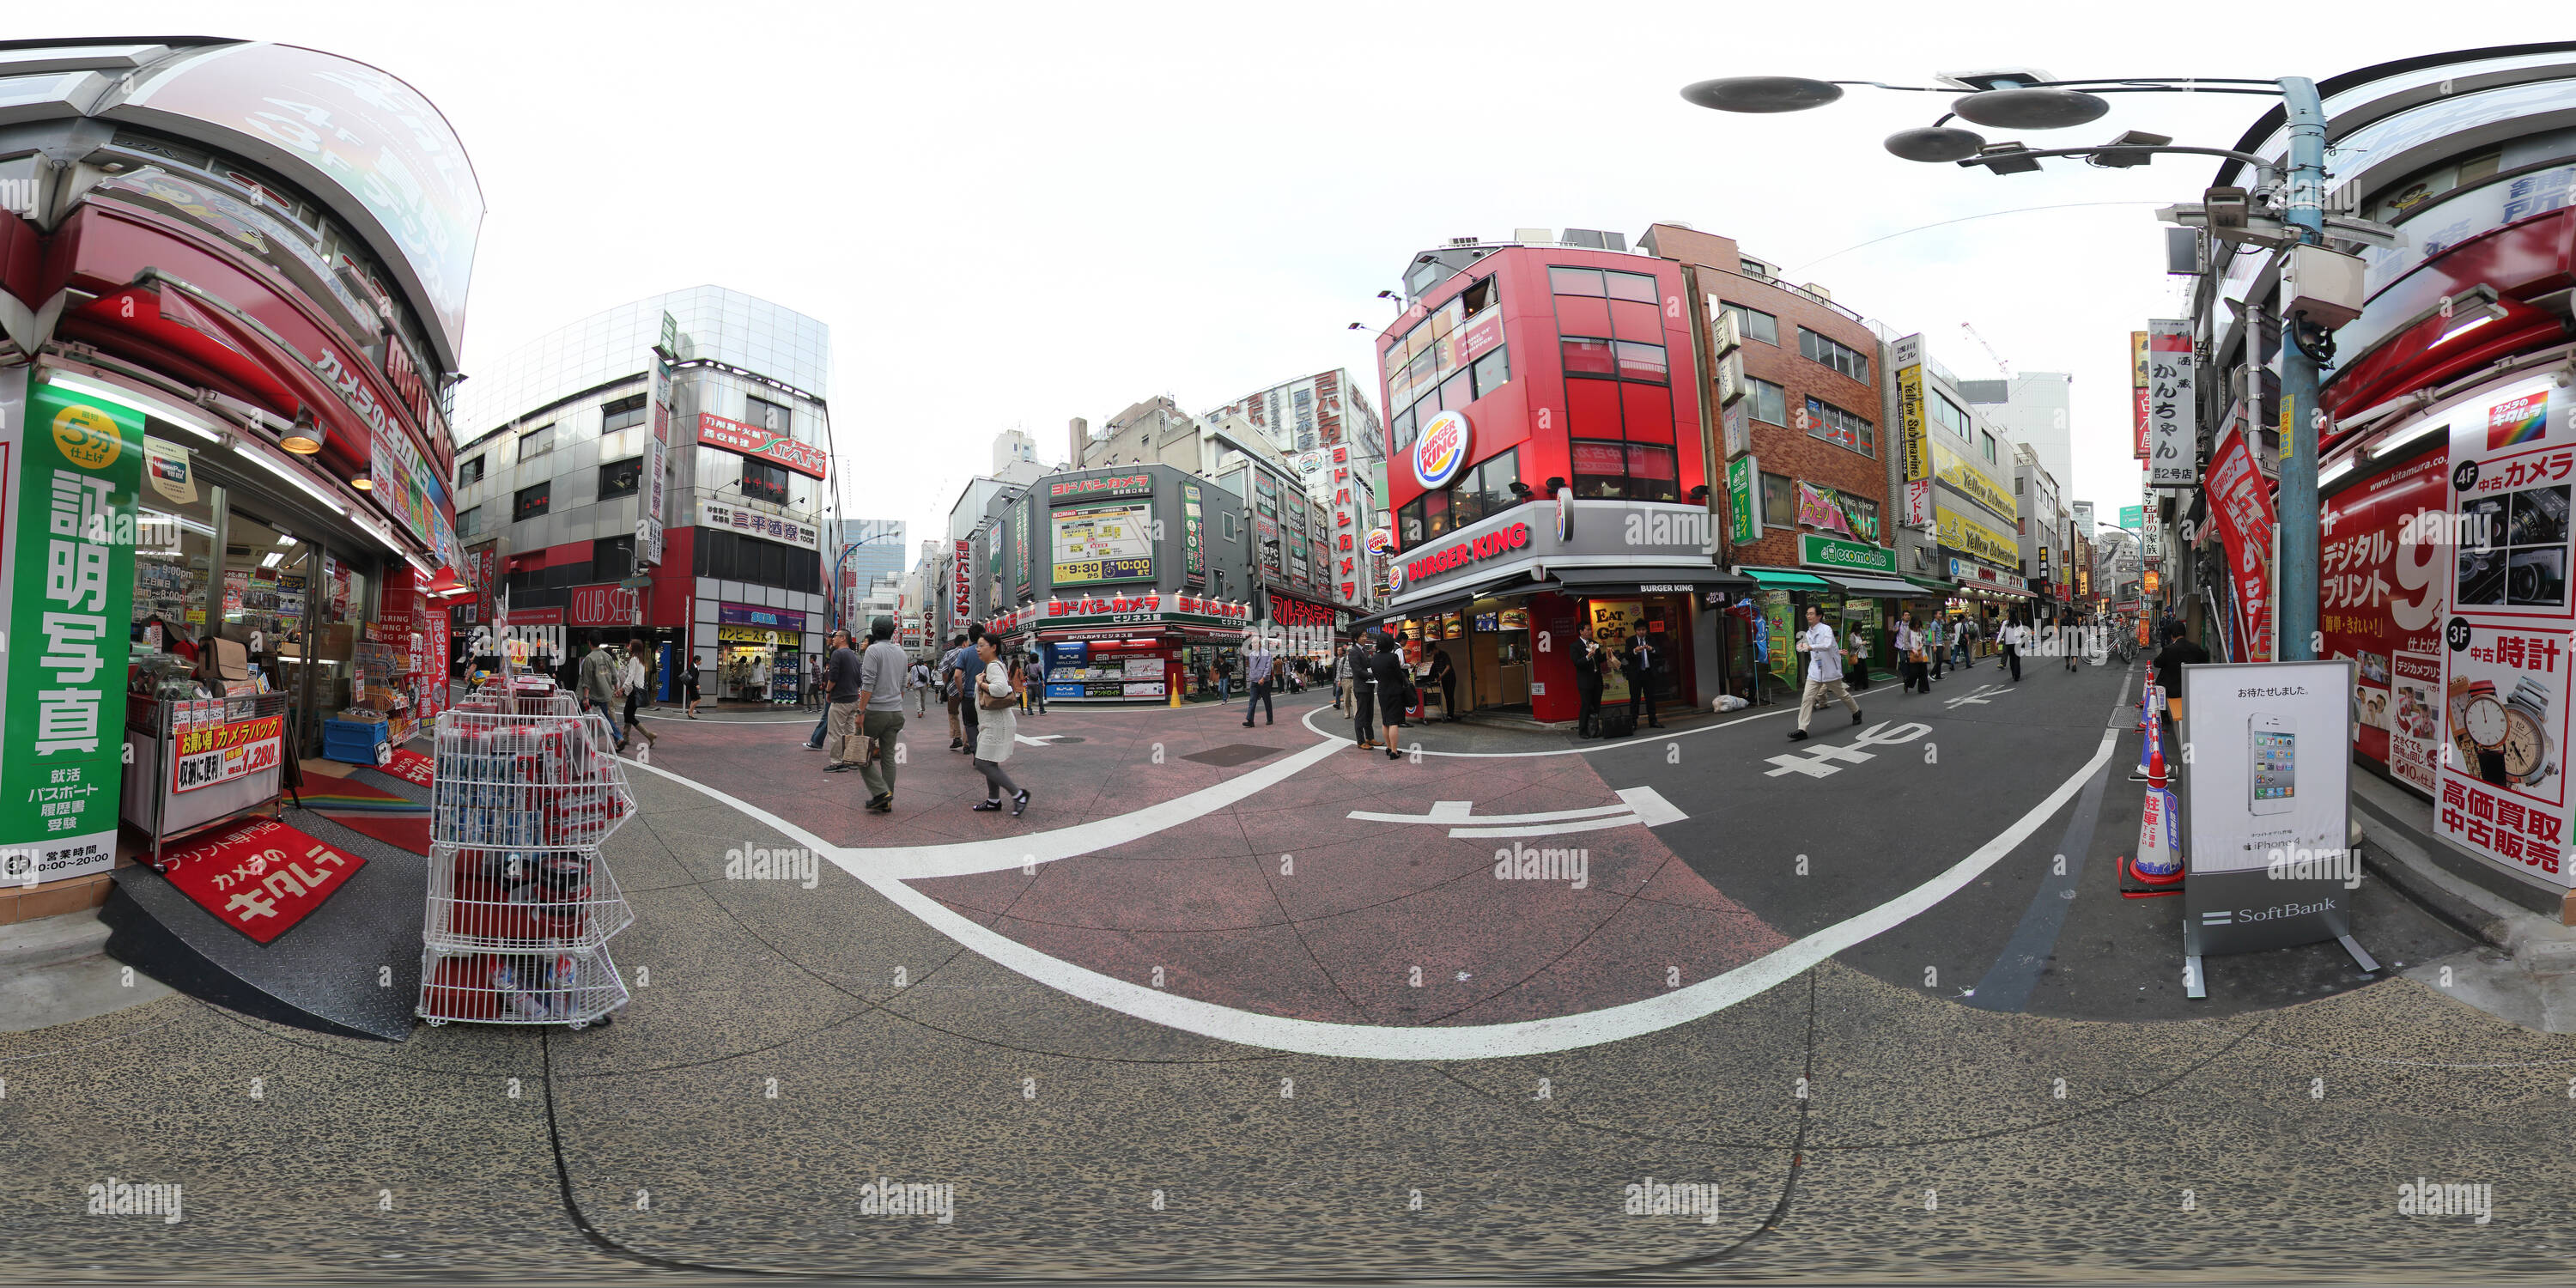 Vue panoramique à 360° de Tokyo Electric street